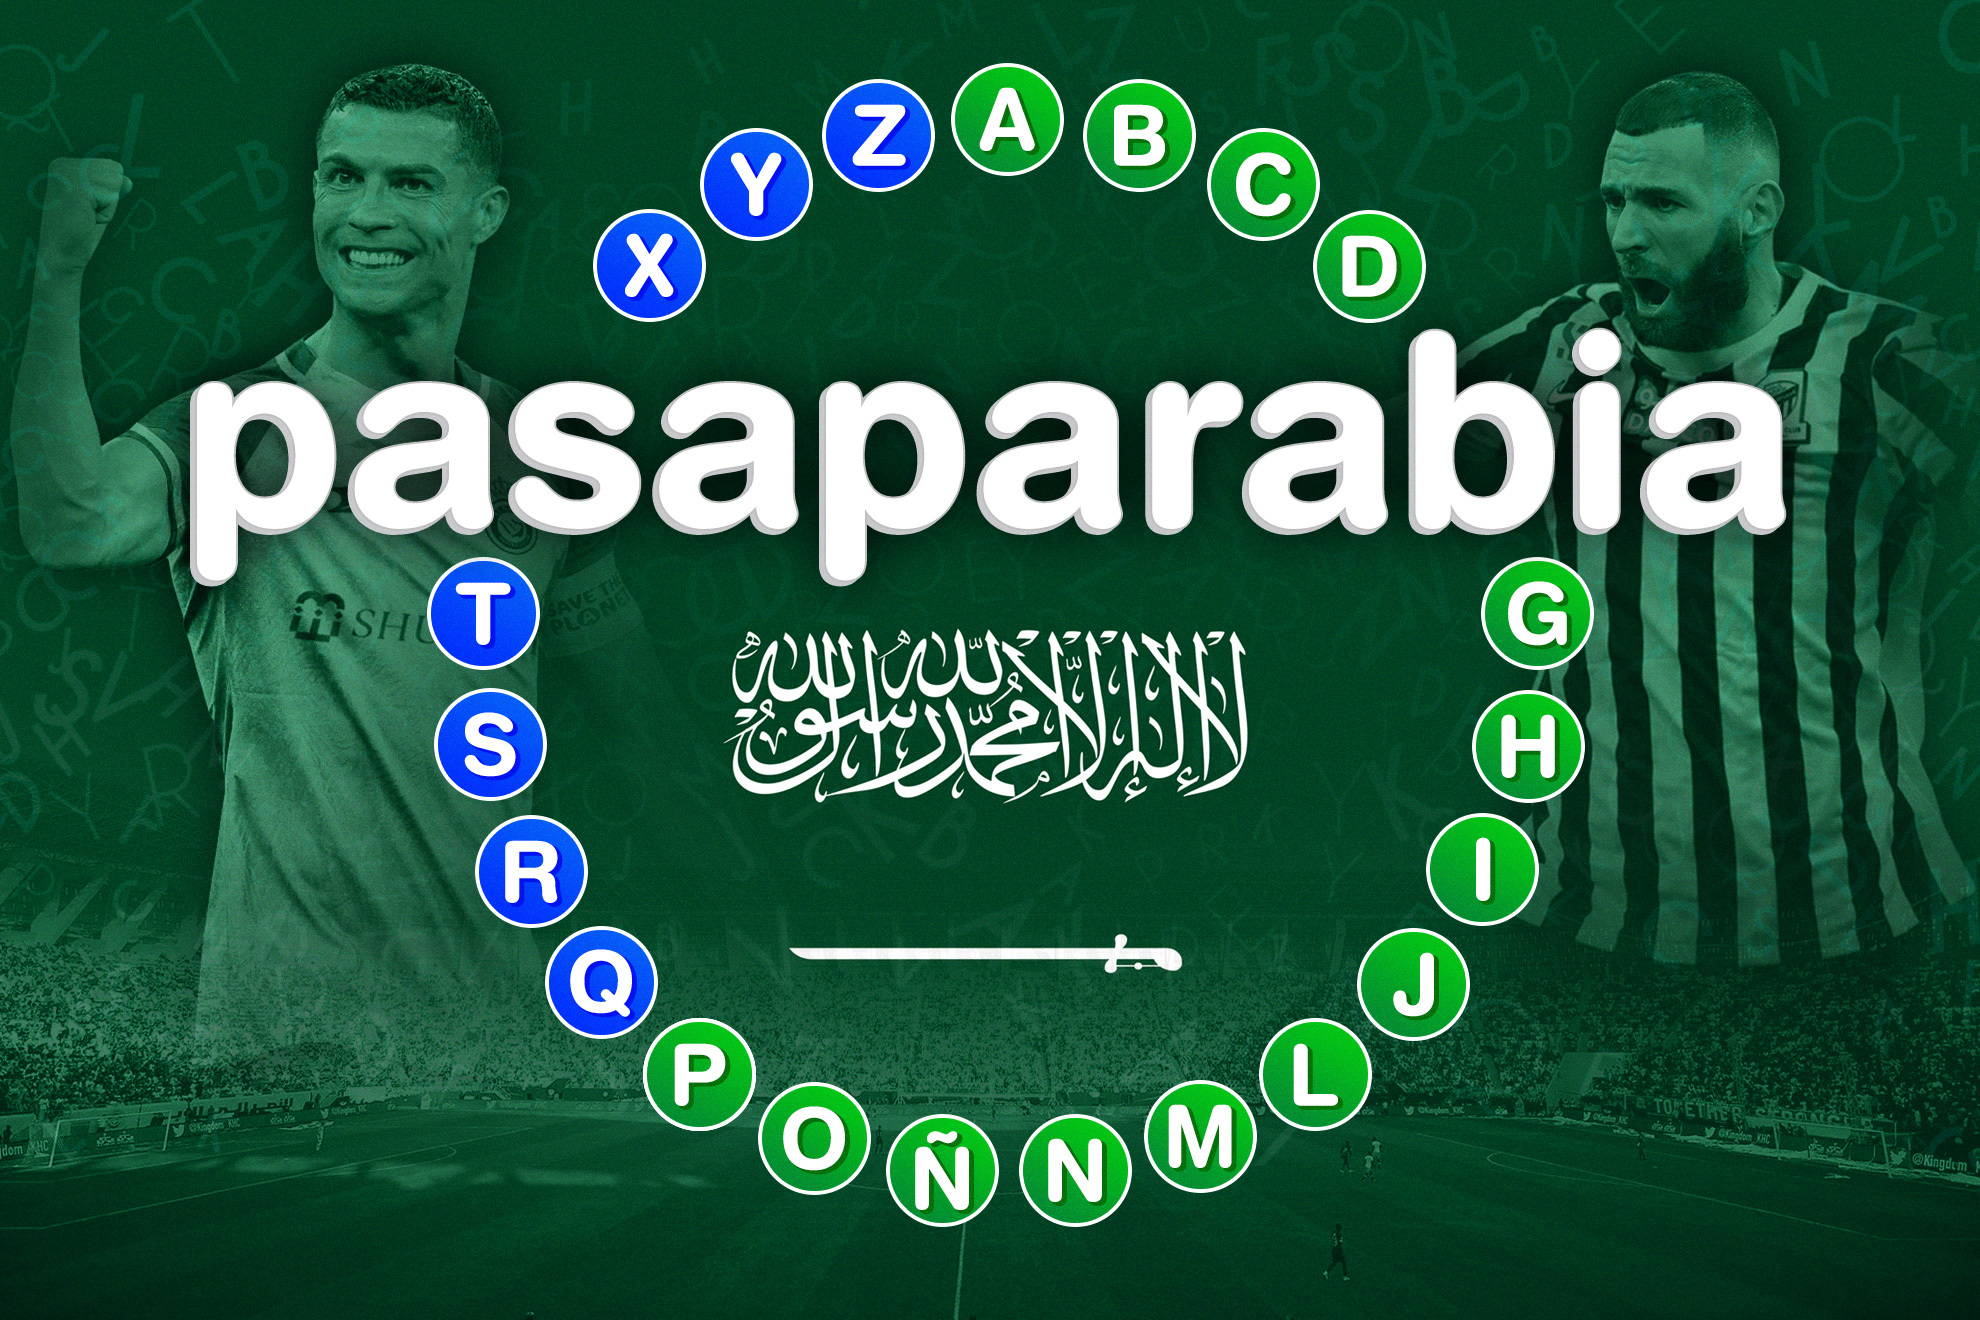 Juega con nosotros a 'Pasaparabia' y comprueba cuánto sabes de la liga de Arabia Saudí: ¿Ganarás a Miguel Quintana?